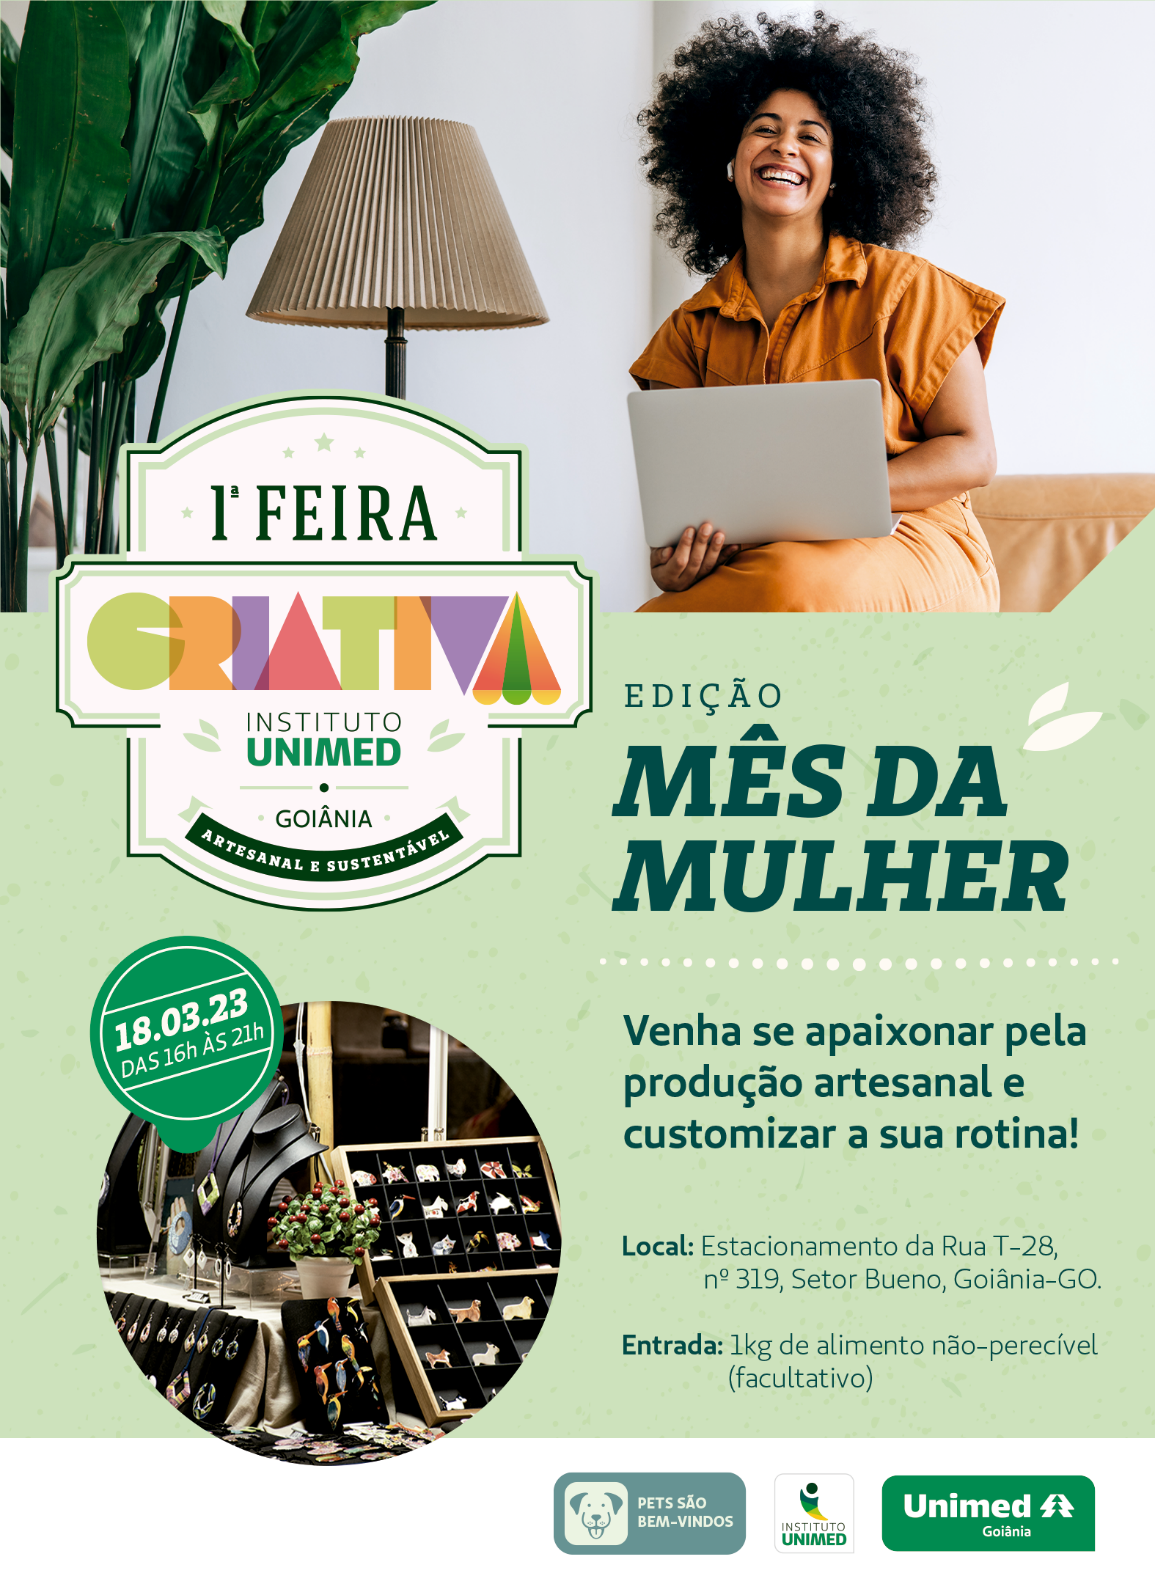 Instituto Unimed Goiânia promove feira somente com mulheres